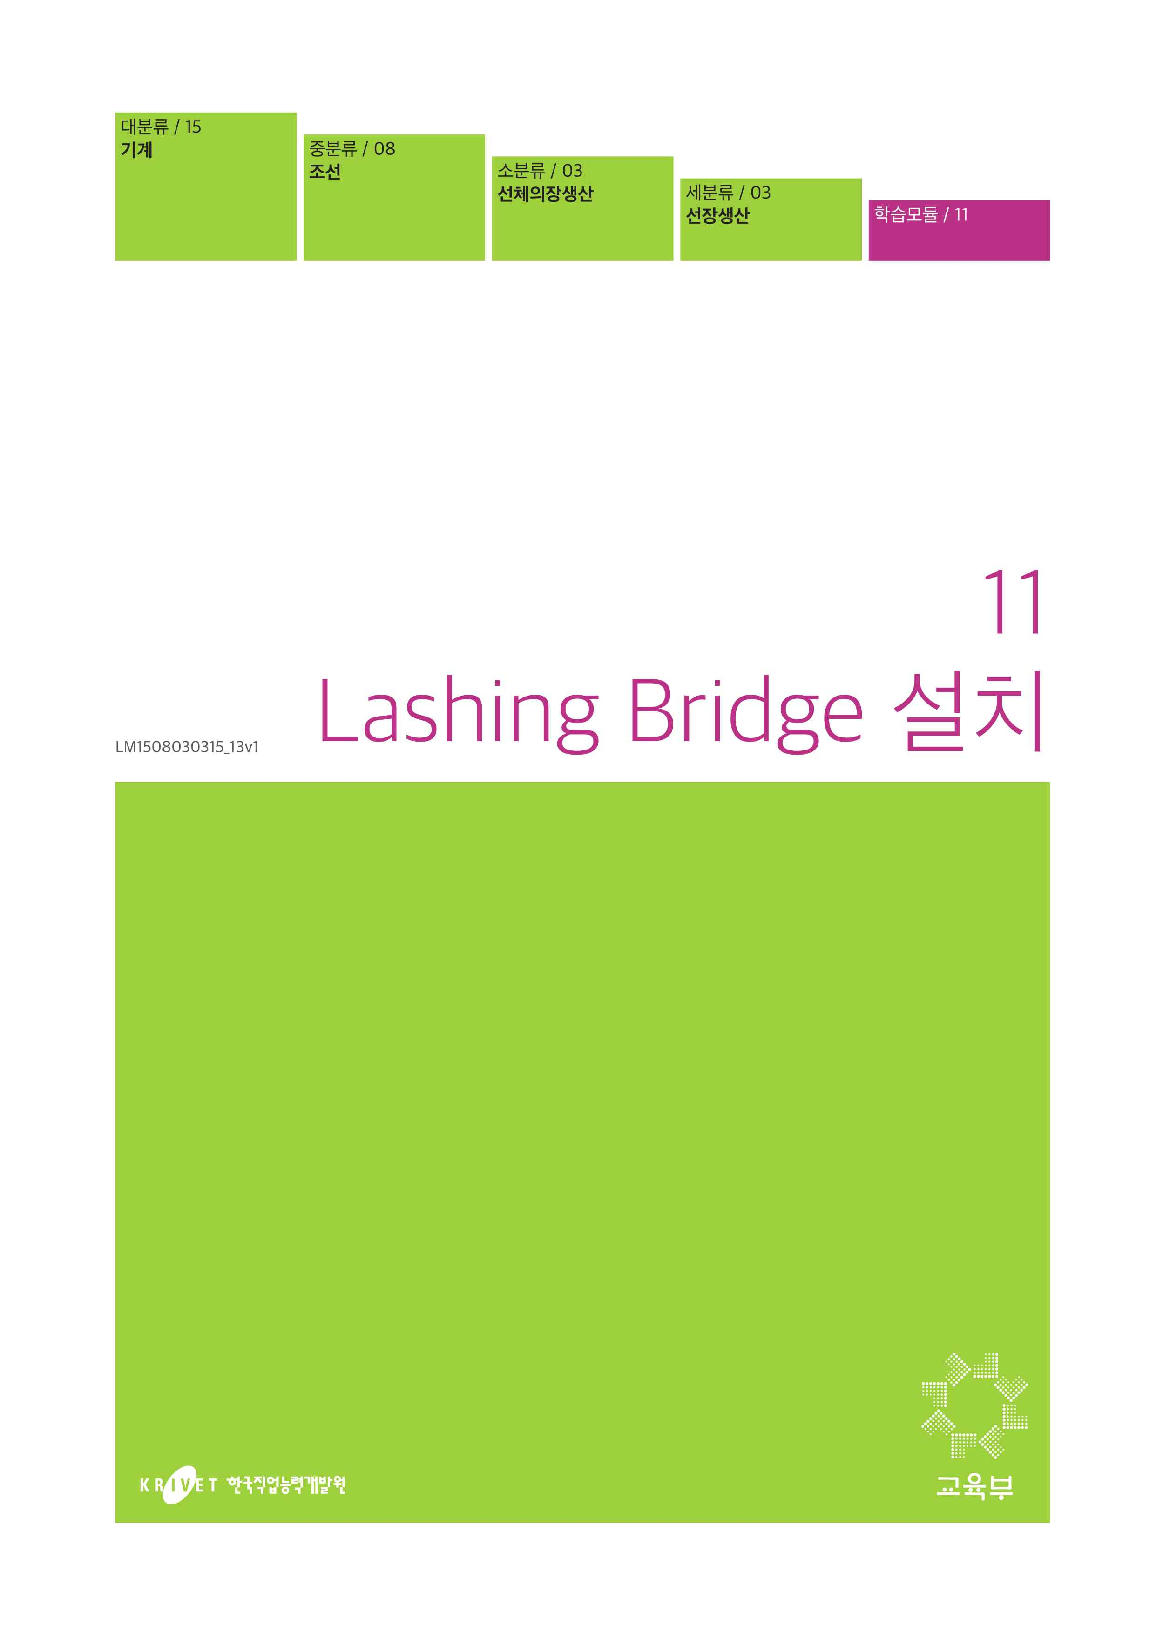 11. Lashing Bridge 설치